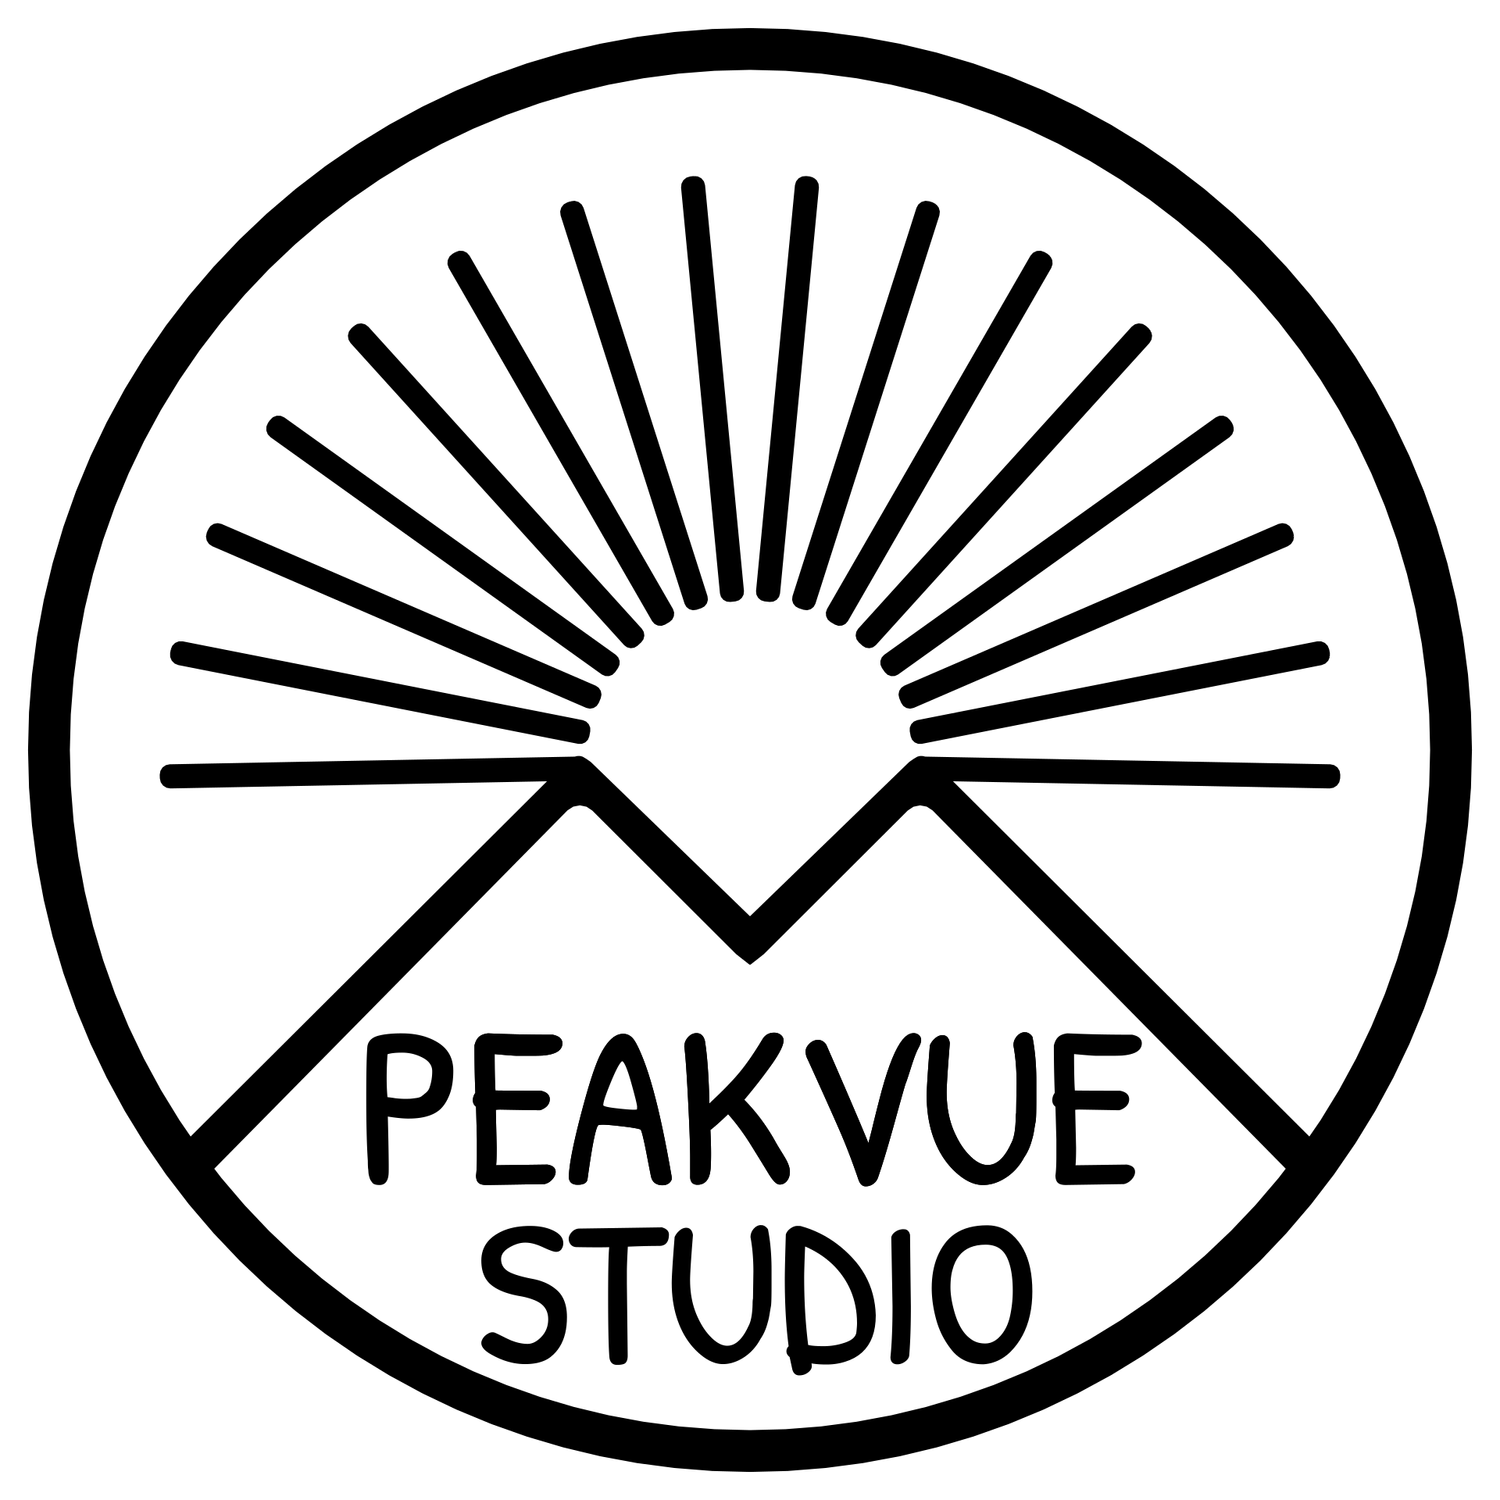 Peakvue Studio